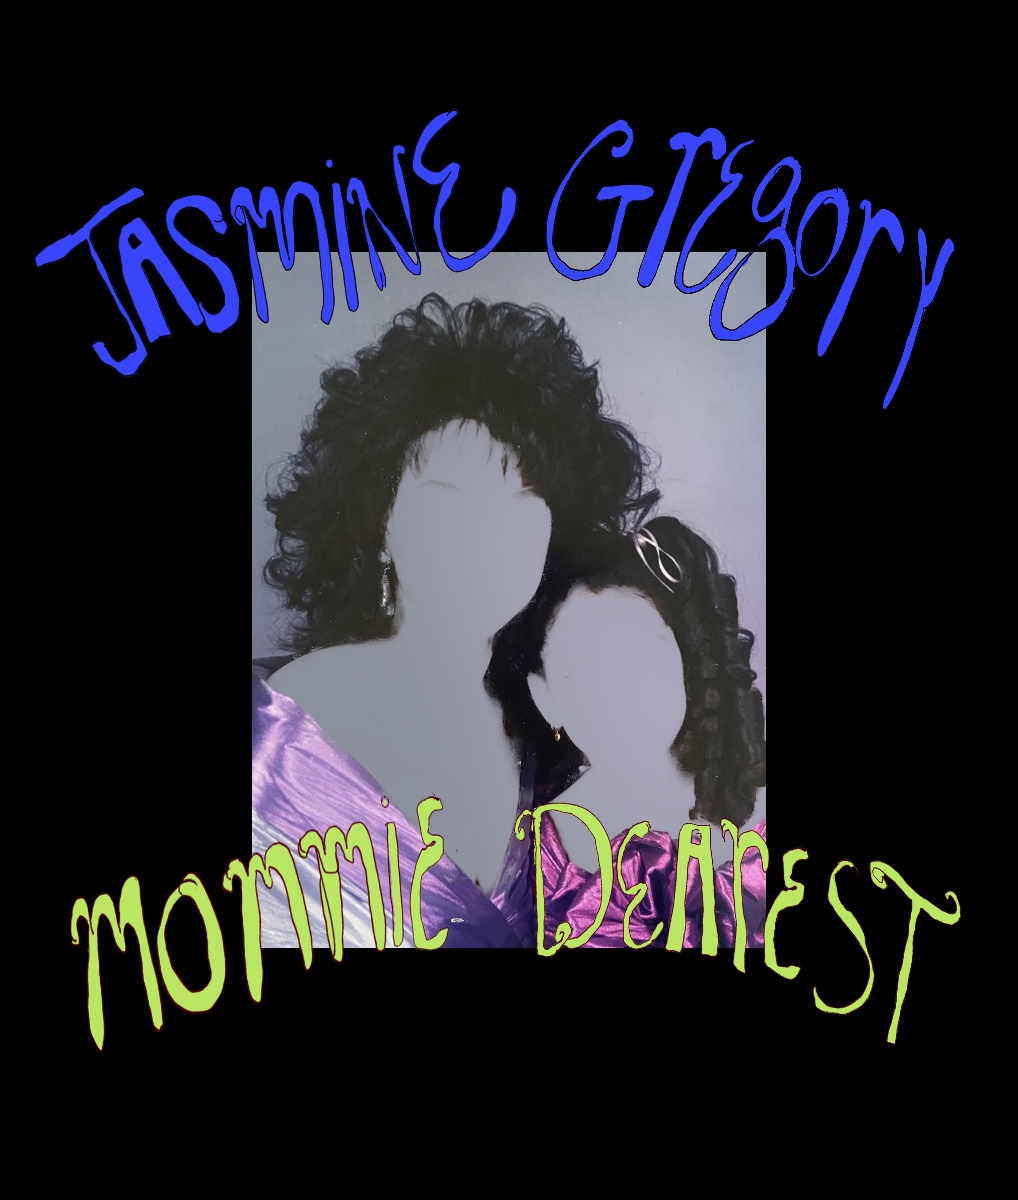 Jasmine Gregory - Mommie dearest